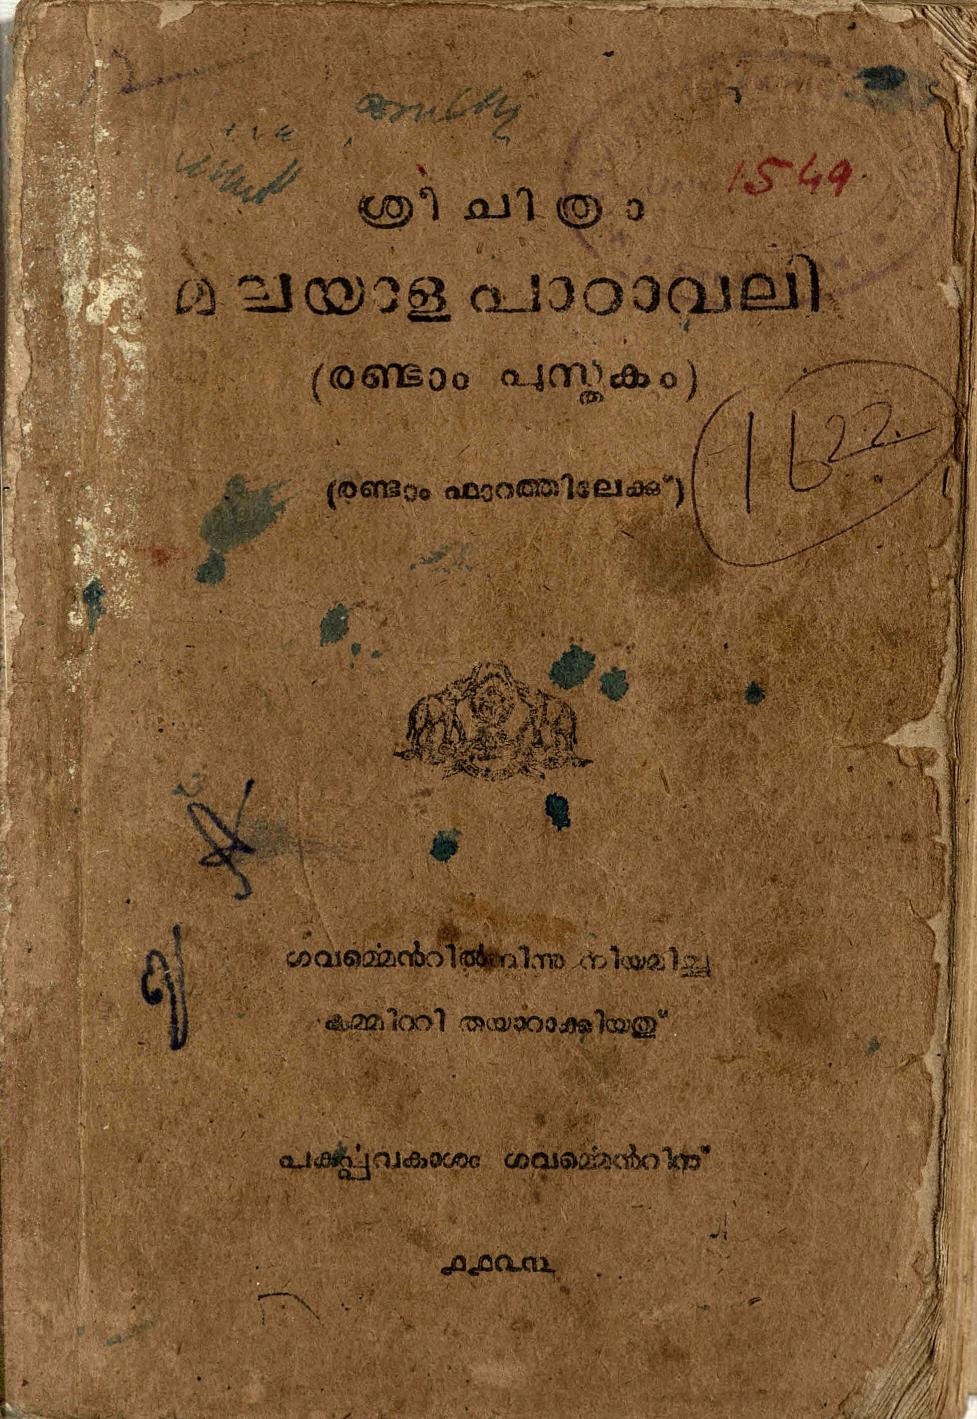  1948 - Sree Chithra Malayala Padavali Book 02 form 02